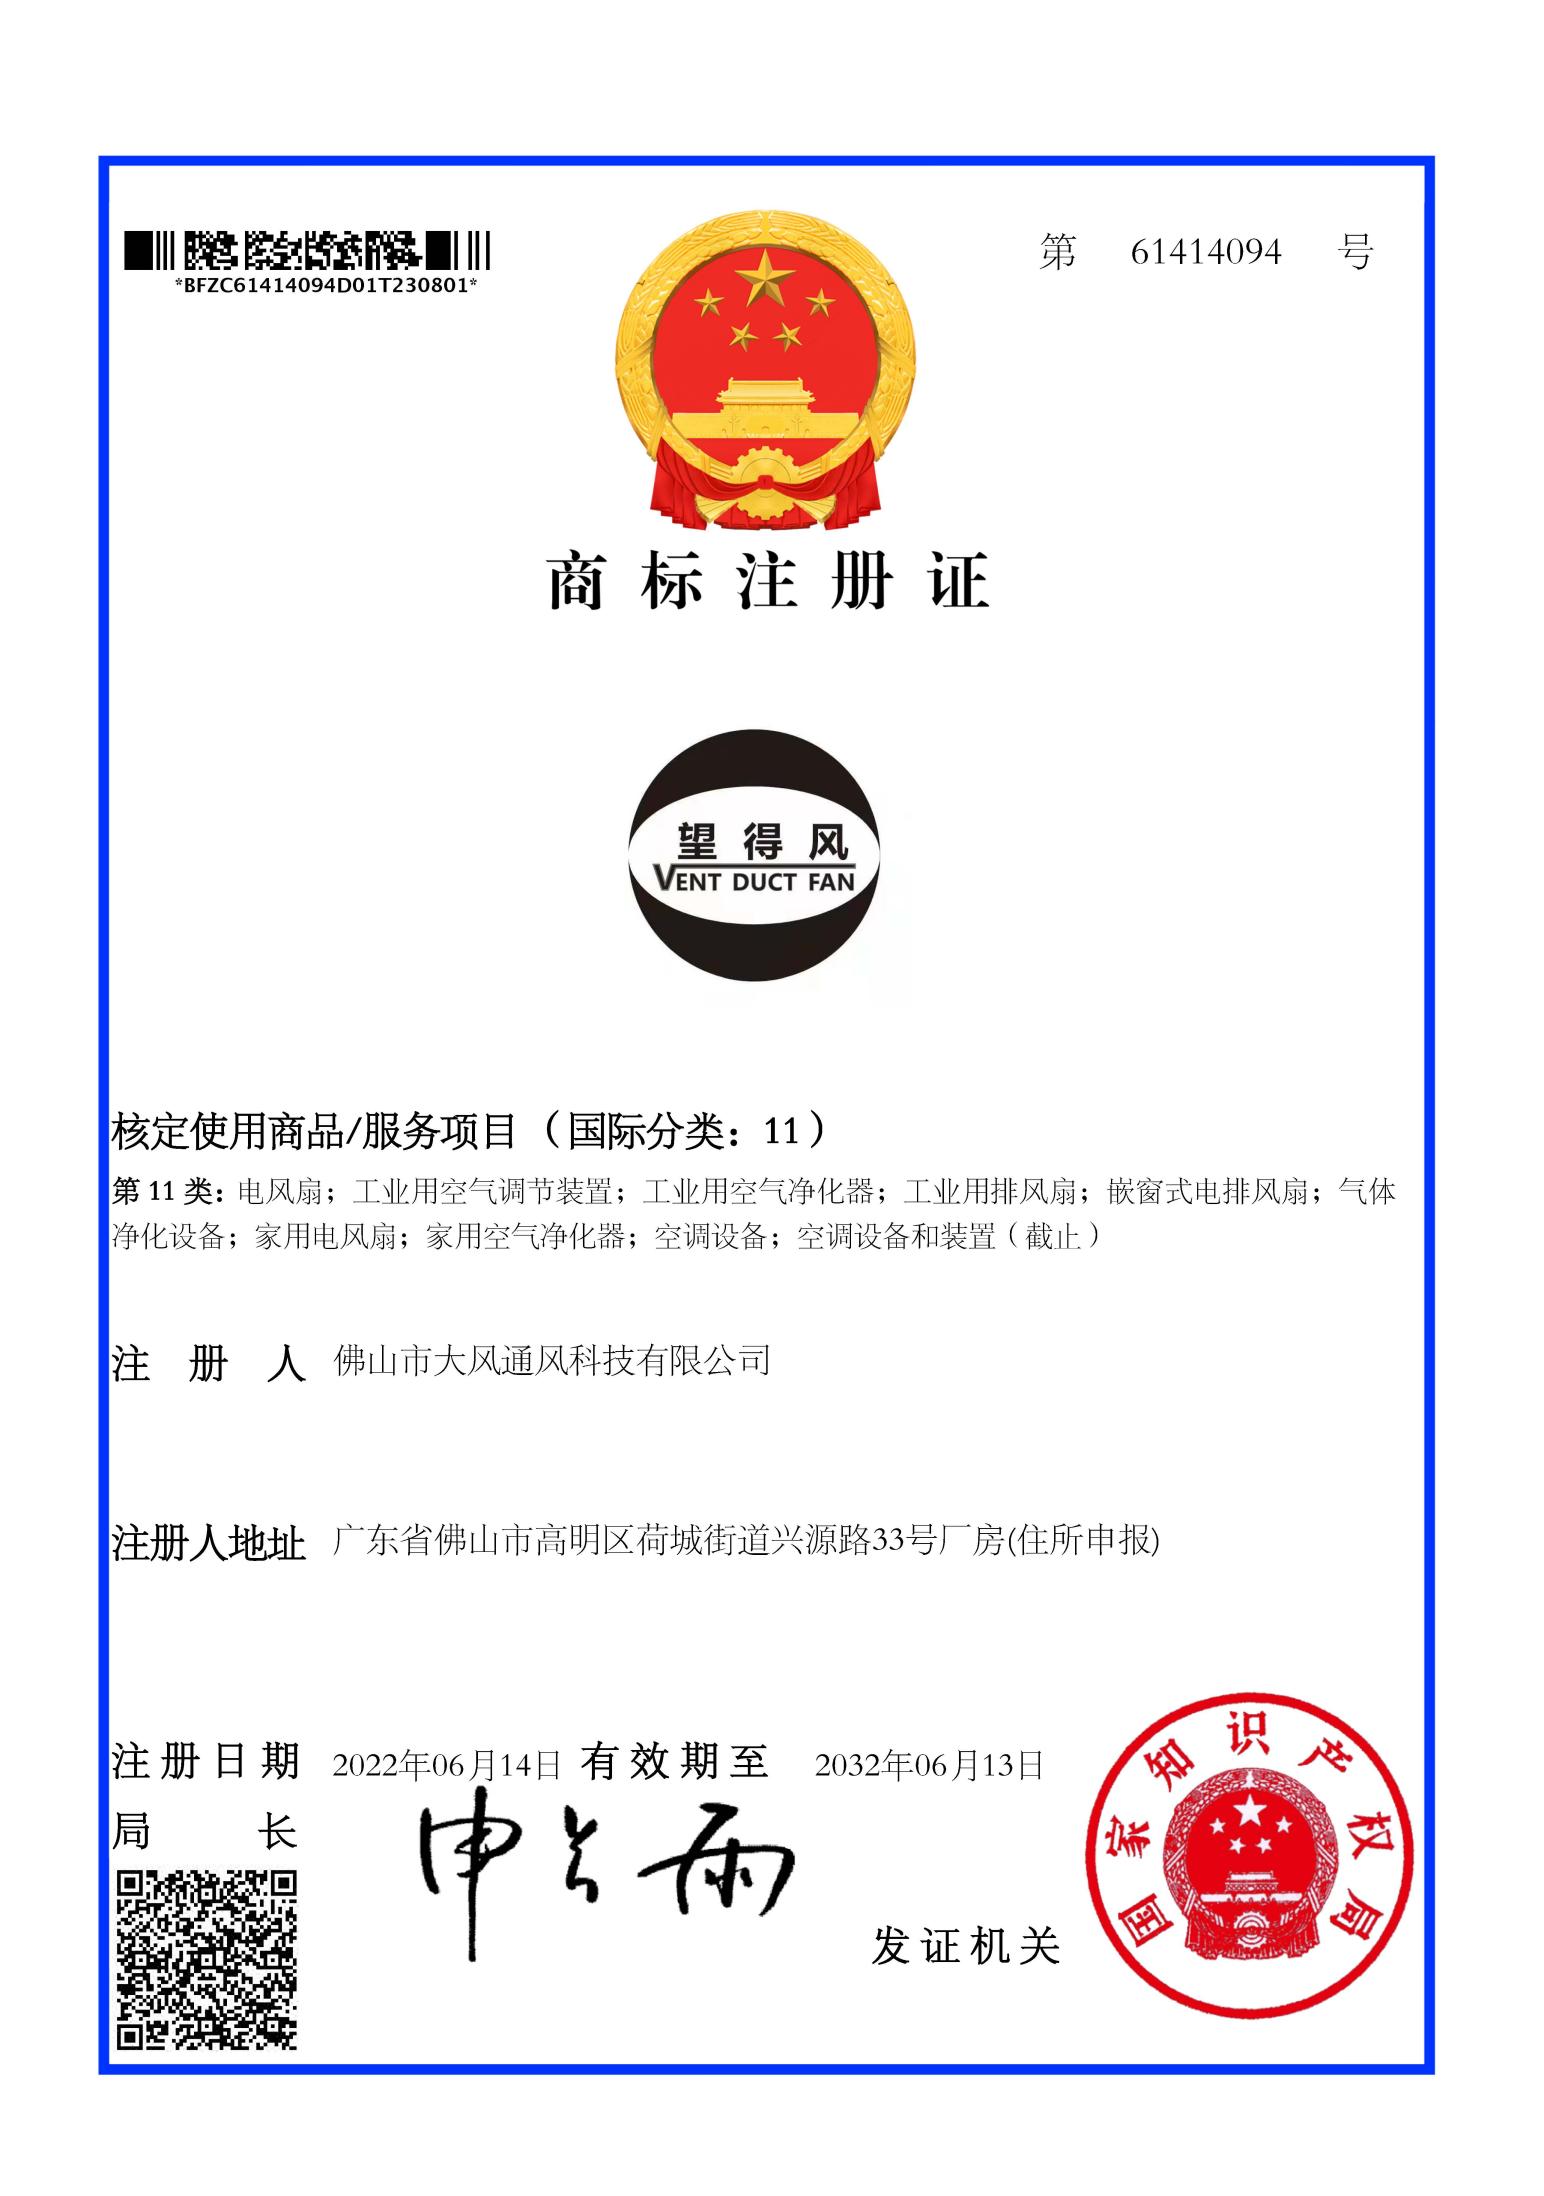 Trademark certificate 01